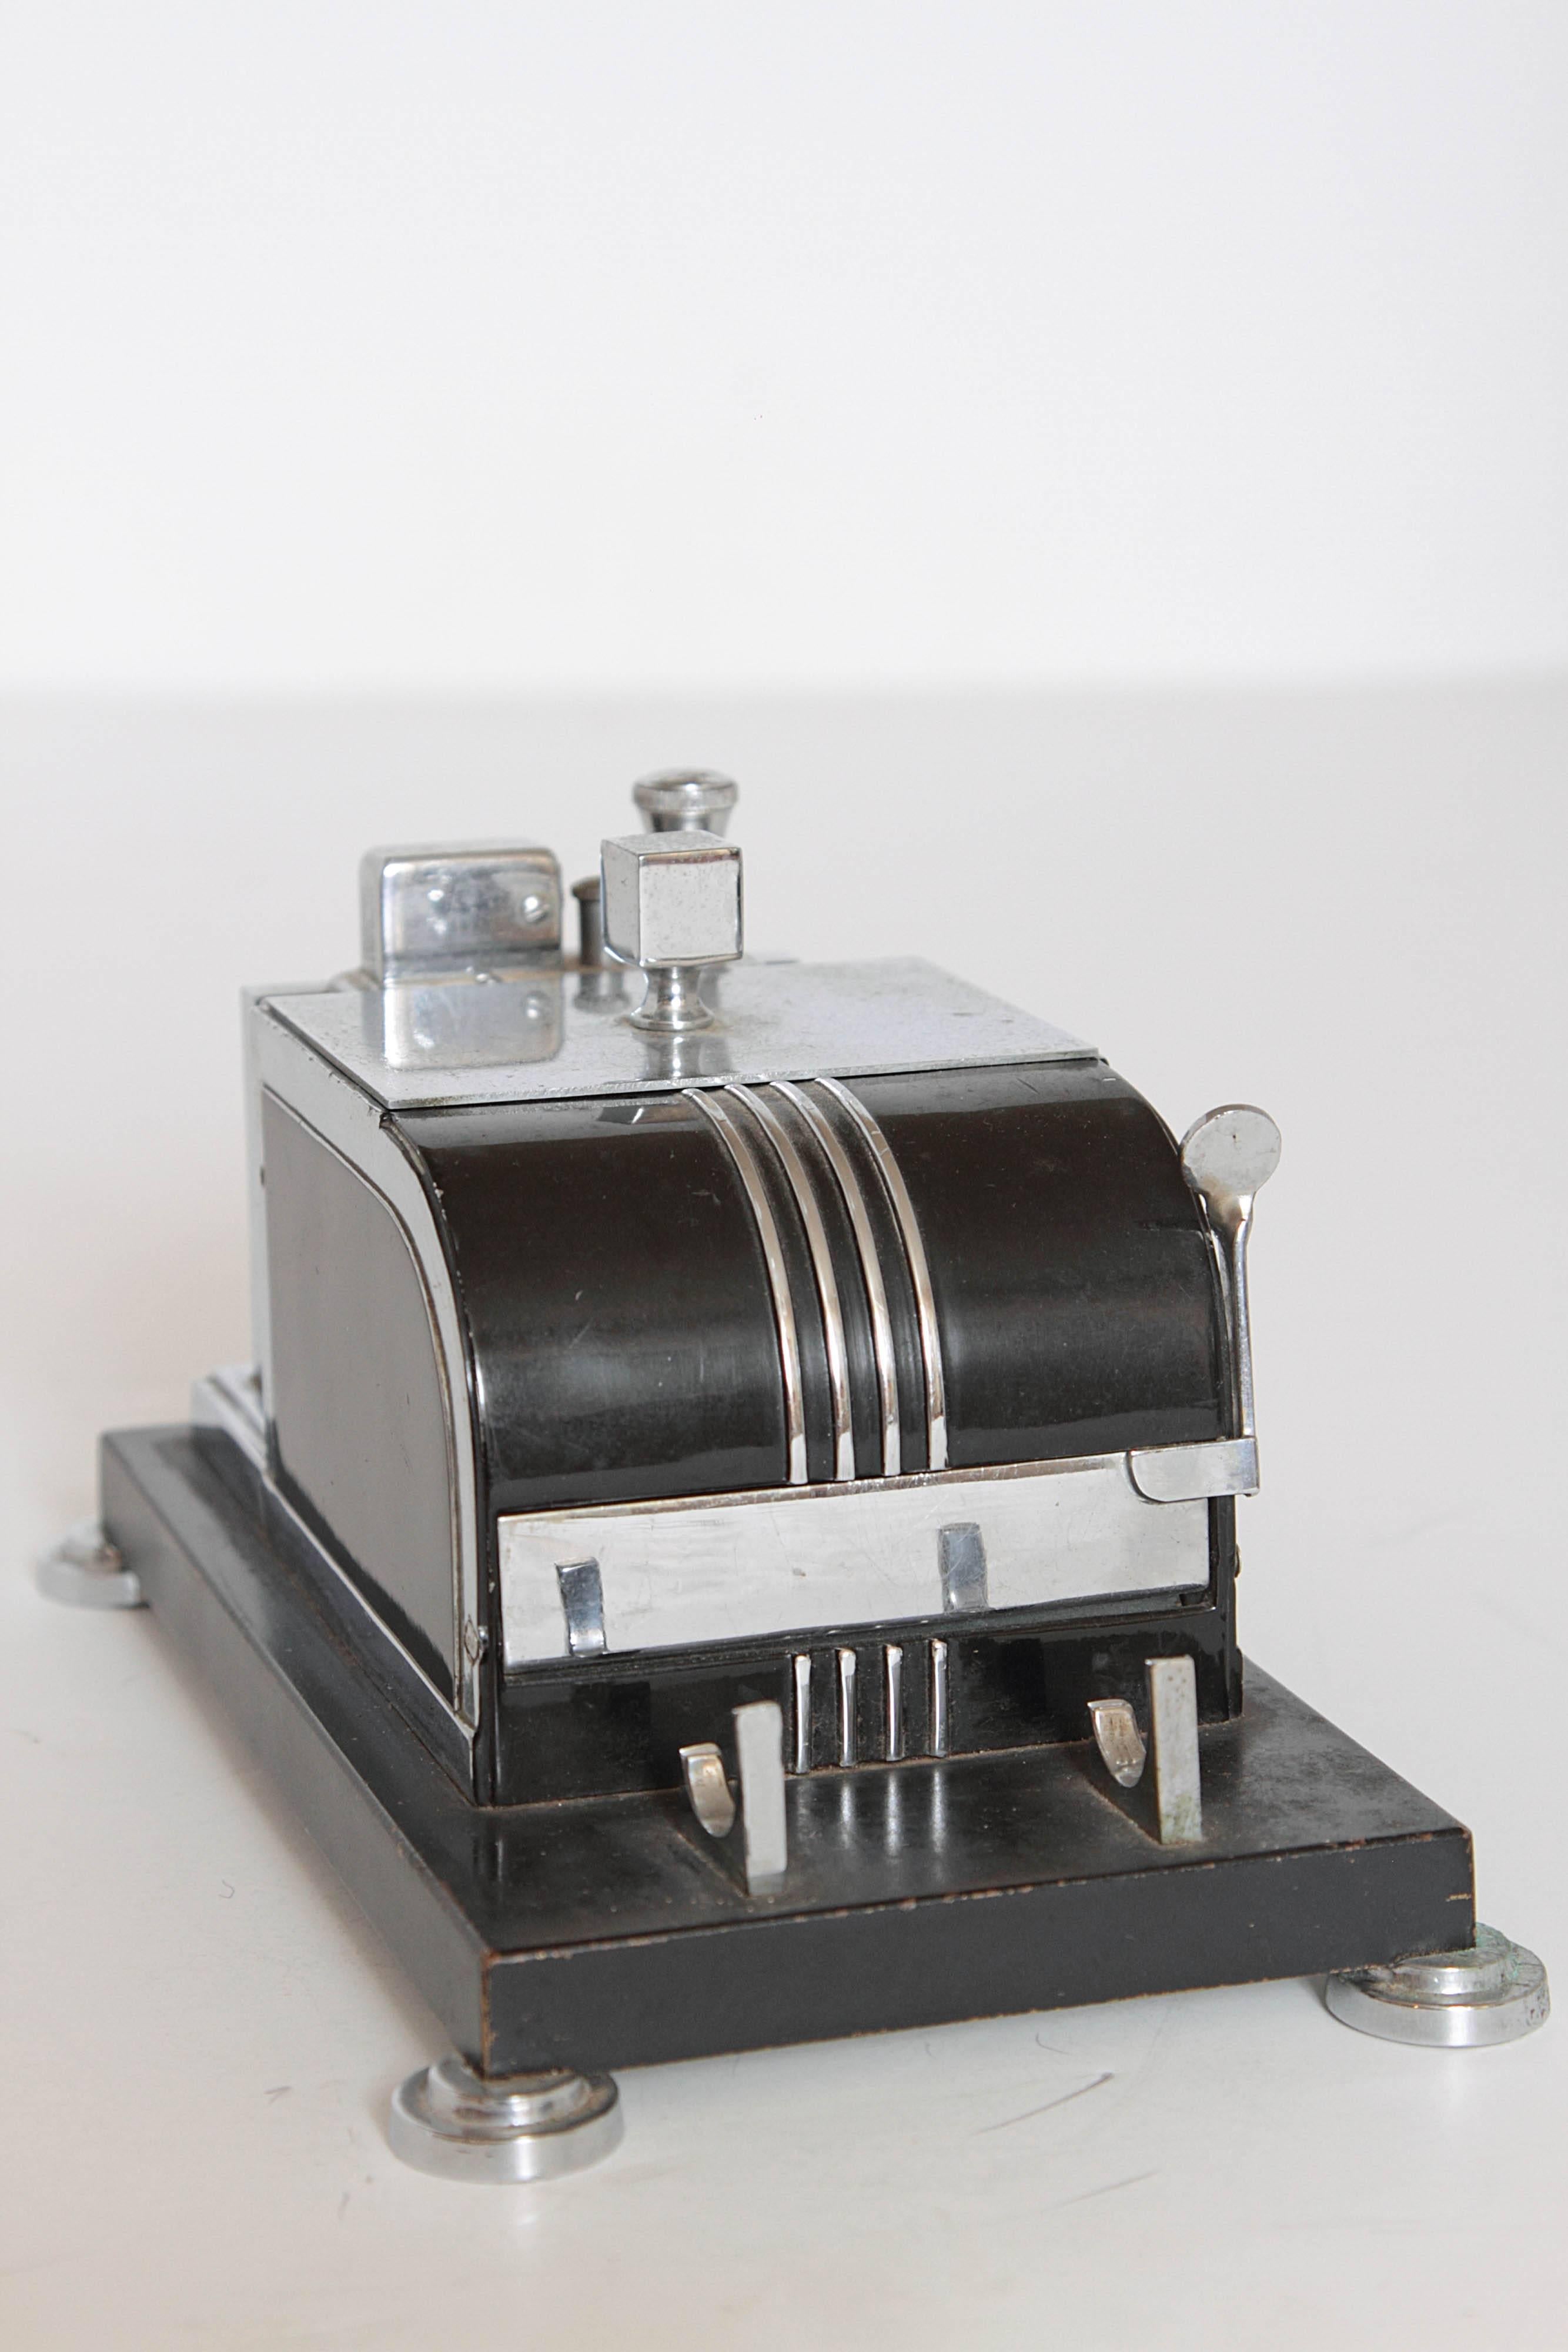 Trio Ronson Machine Age Cigarette Box or Lighter Combos Art Deco Smokerama 2